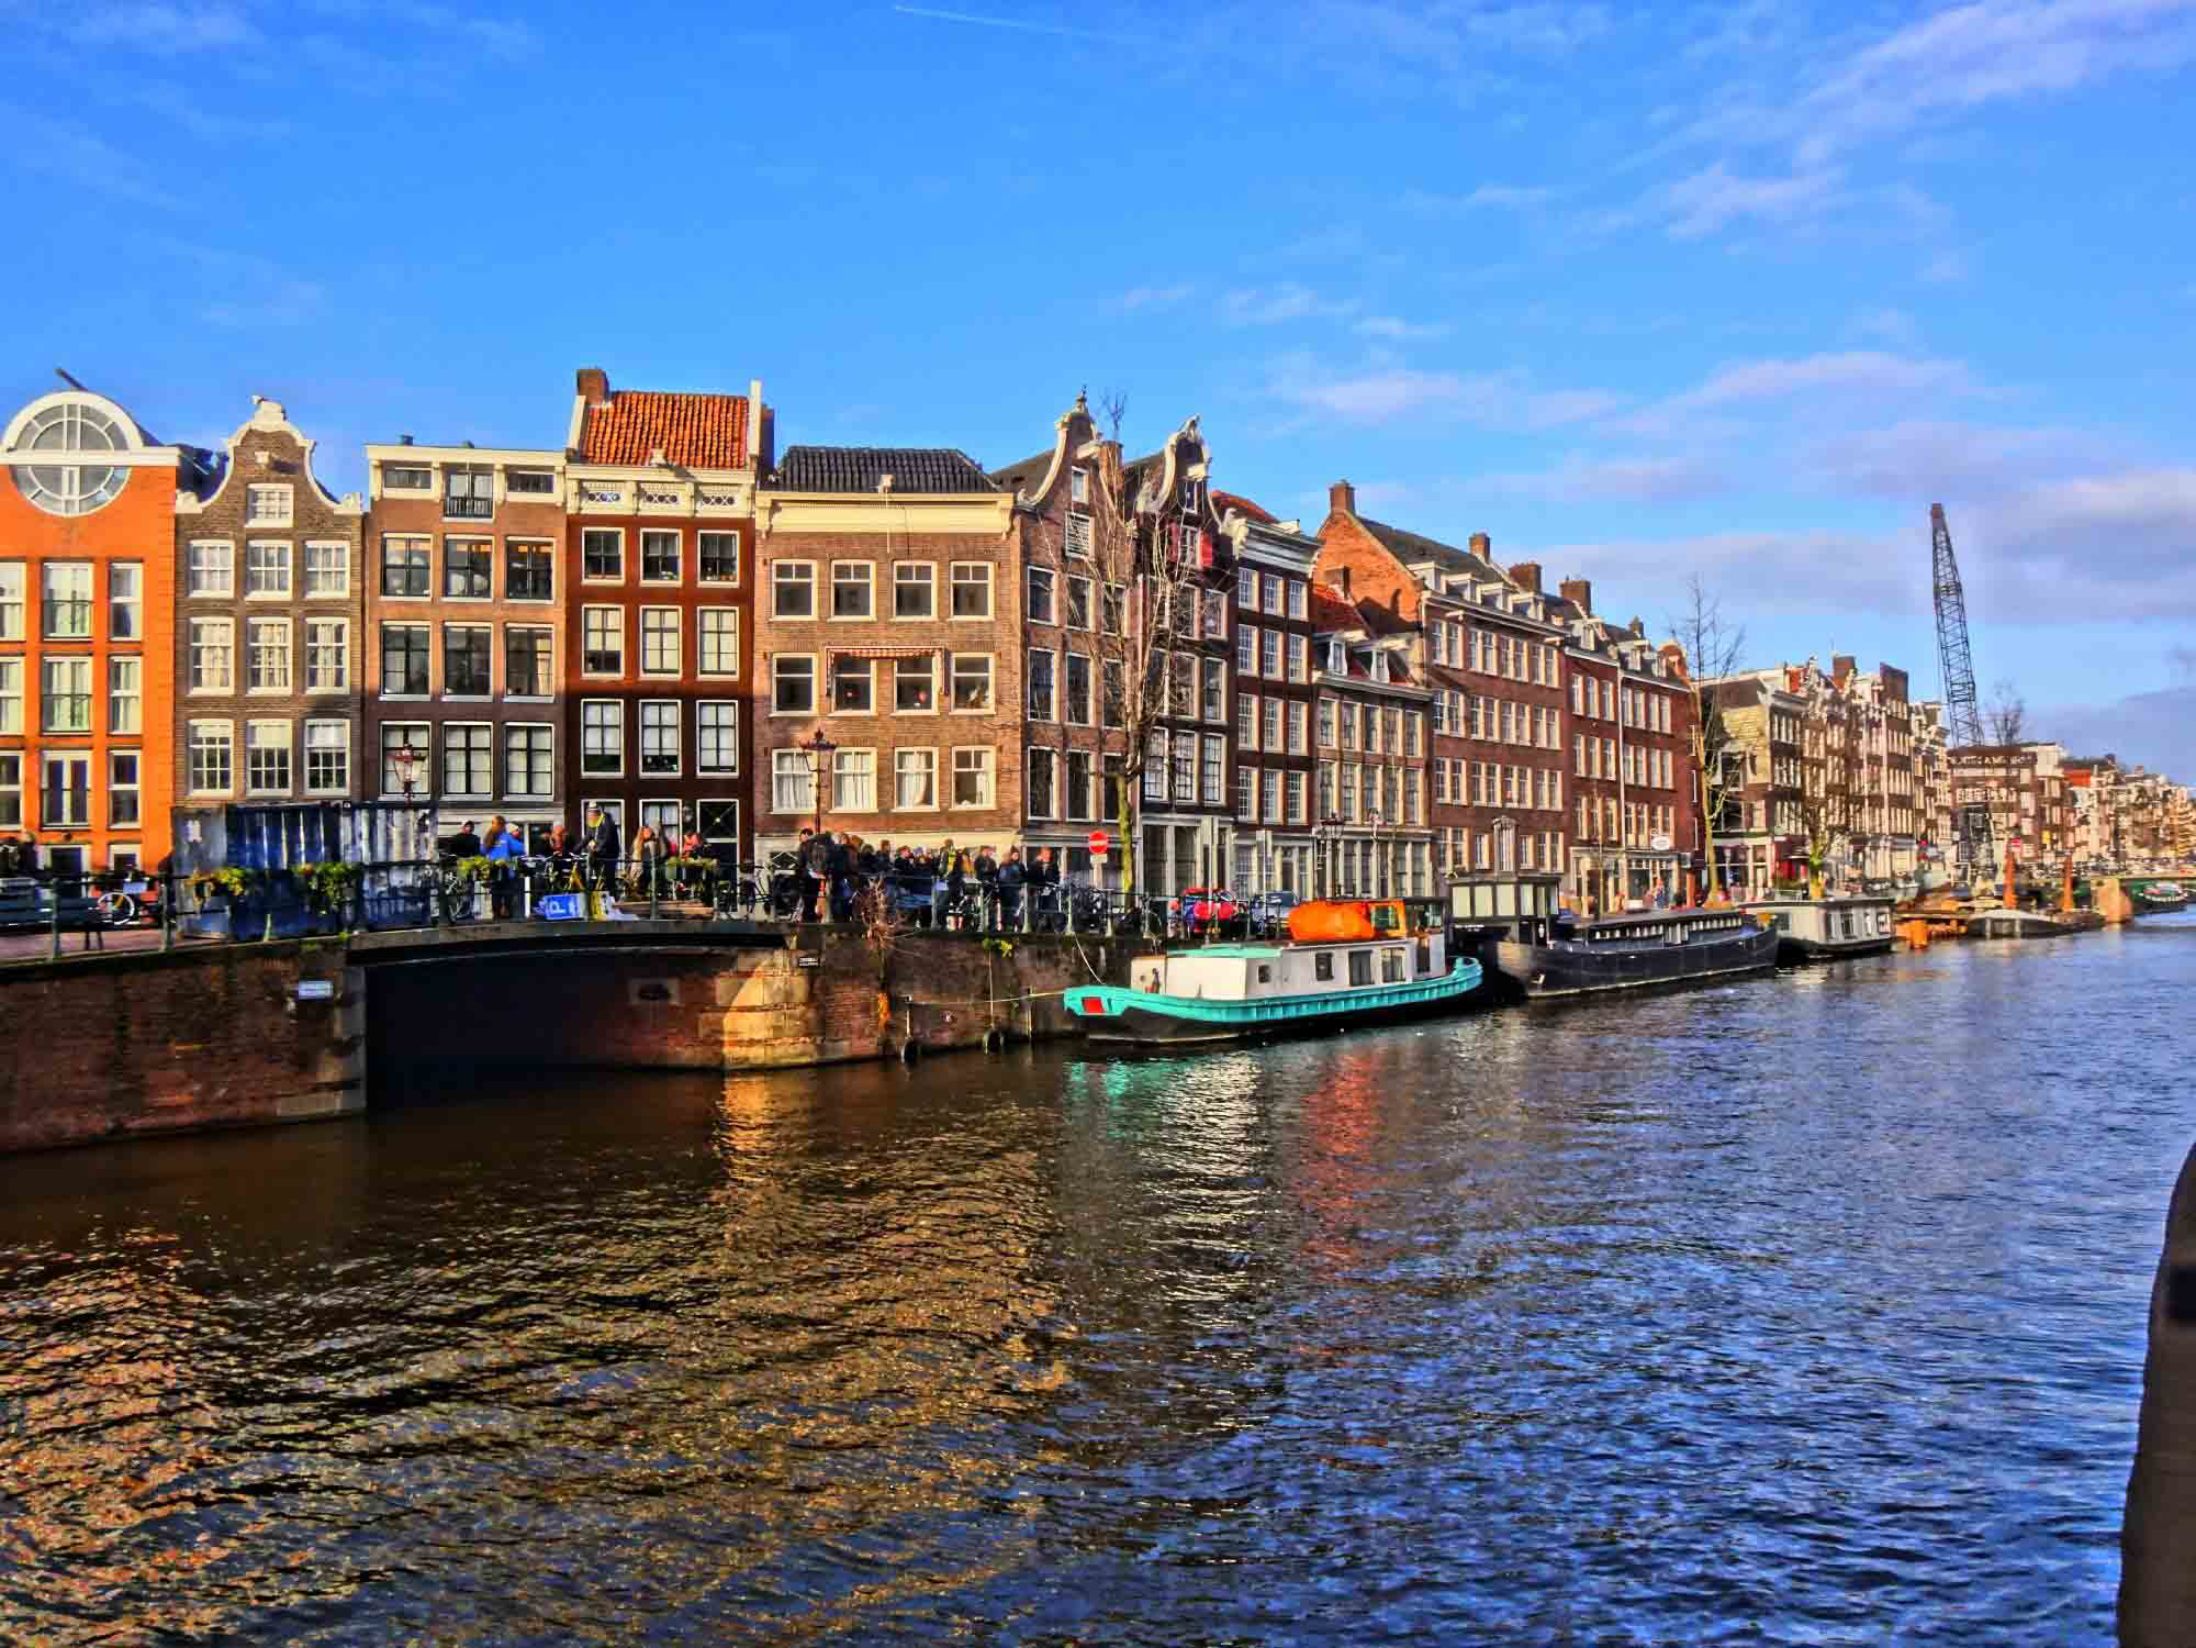 Top Attractions in Amsterdam - Jordaan